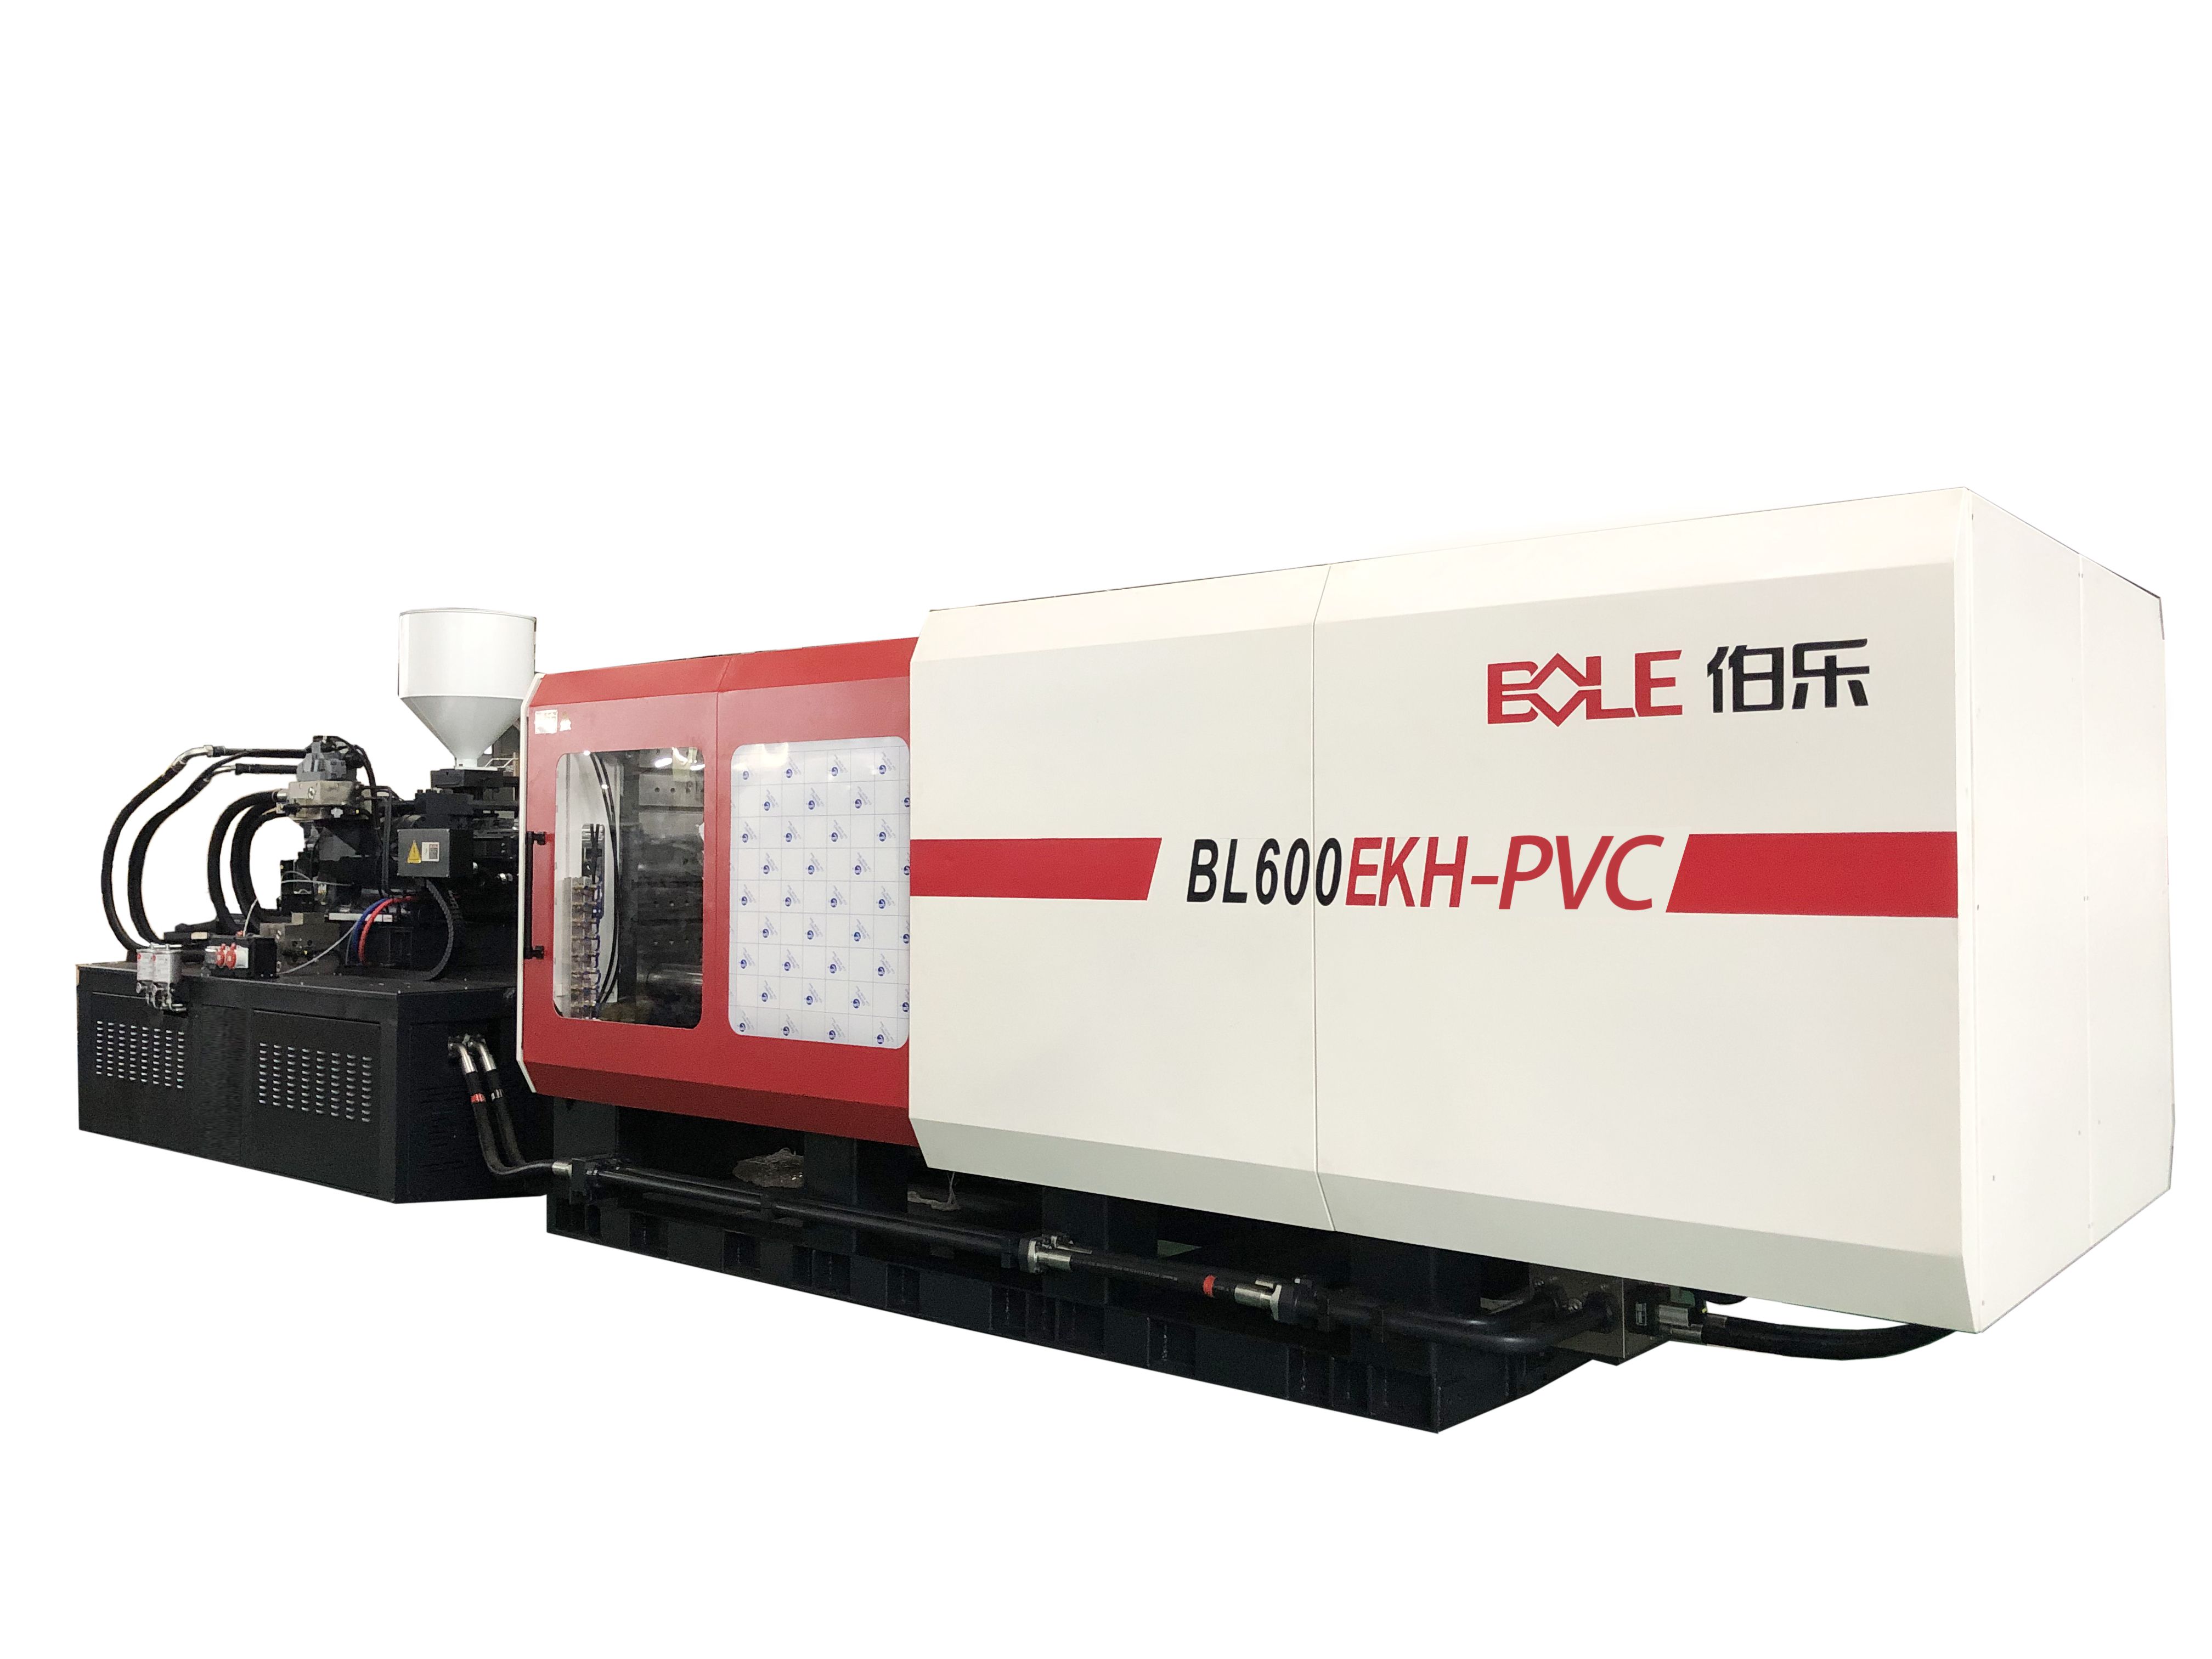 Bl600ekh-pvc - machines pour injection plastique - bole - injection de pvc de 600 tonnes_0